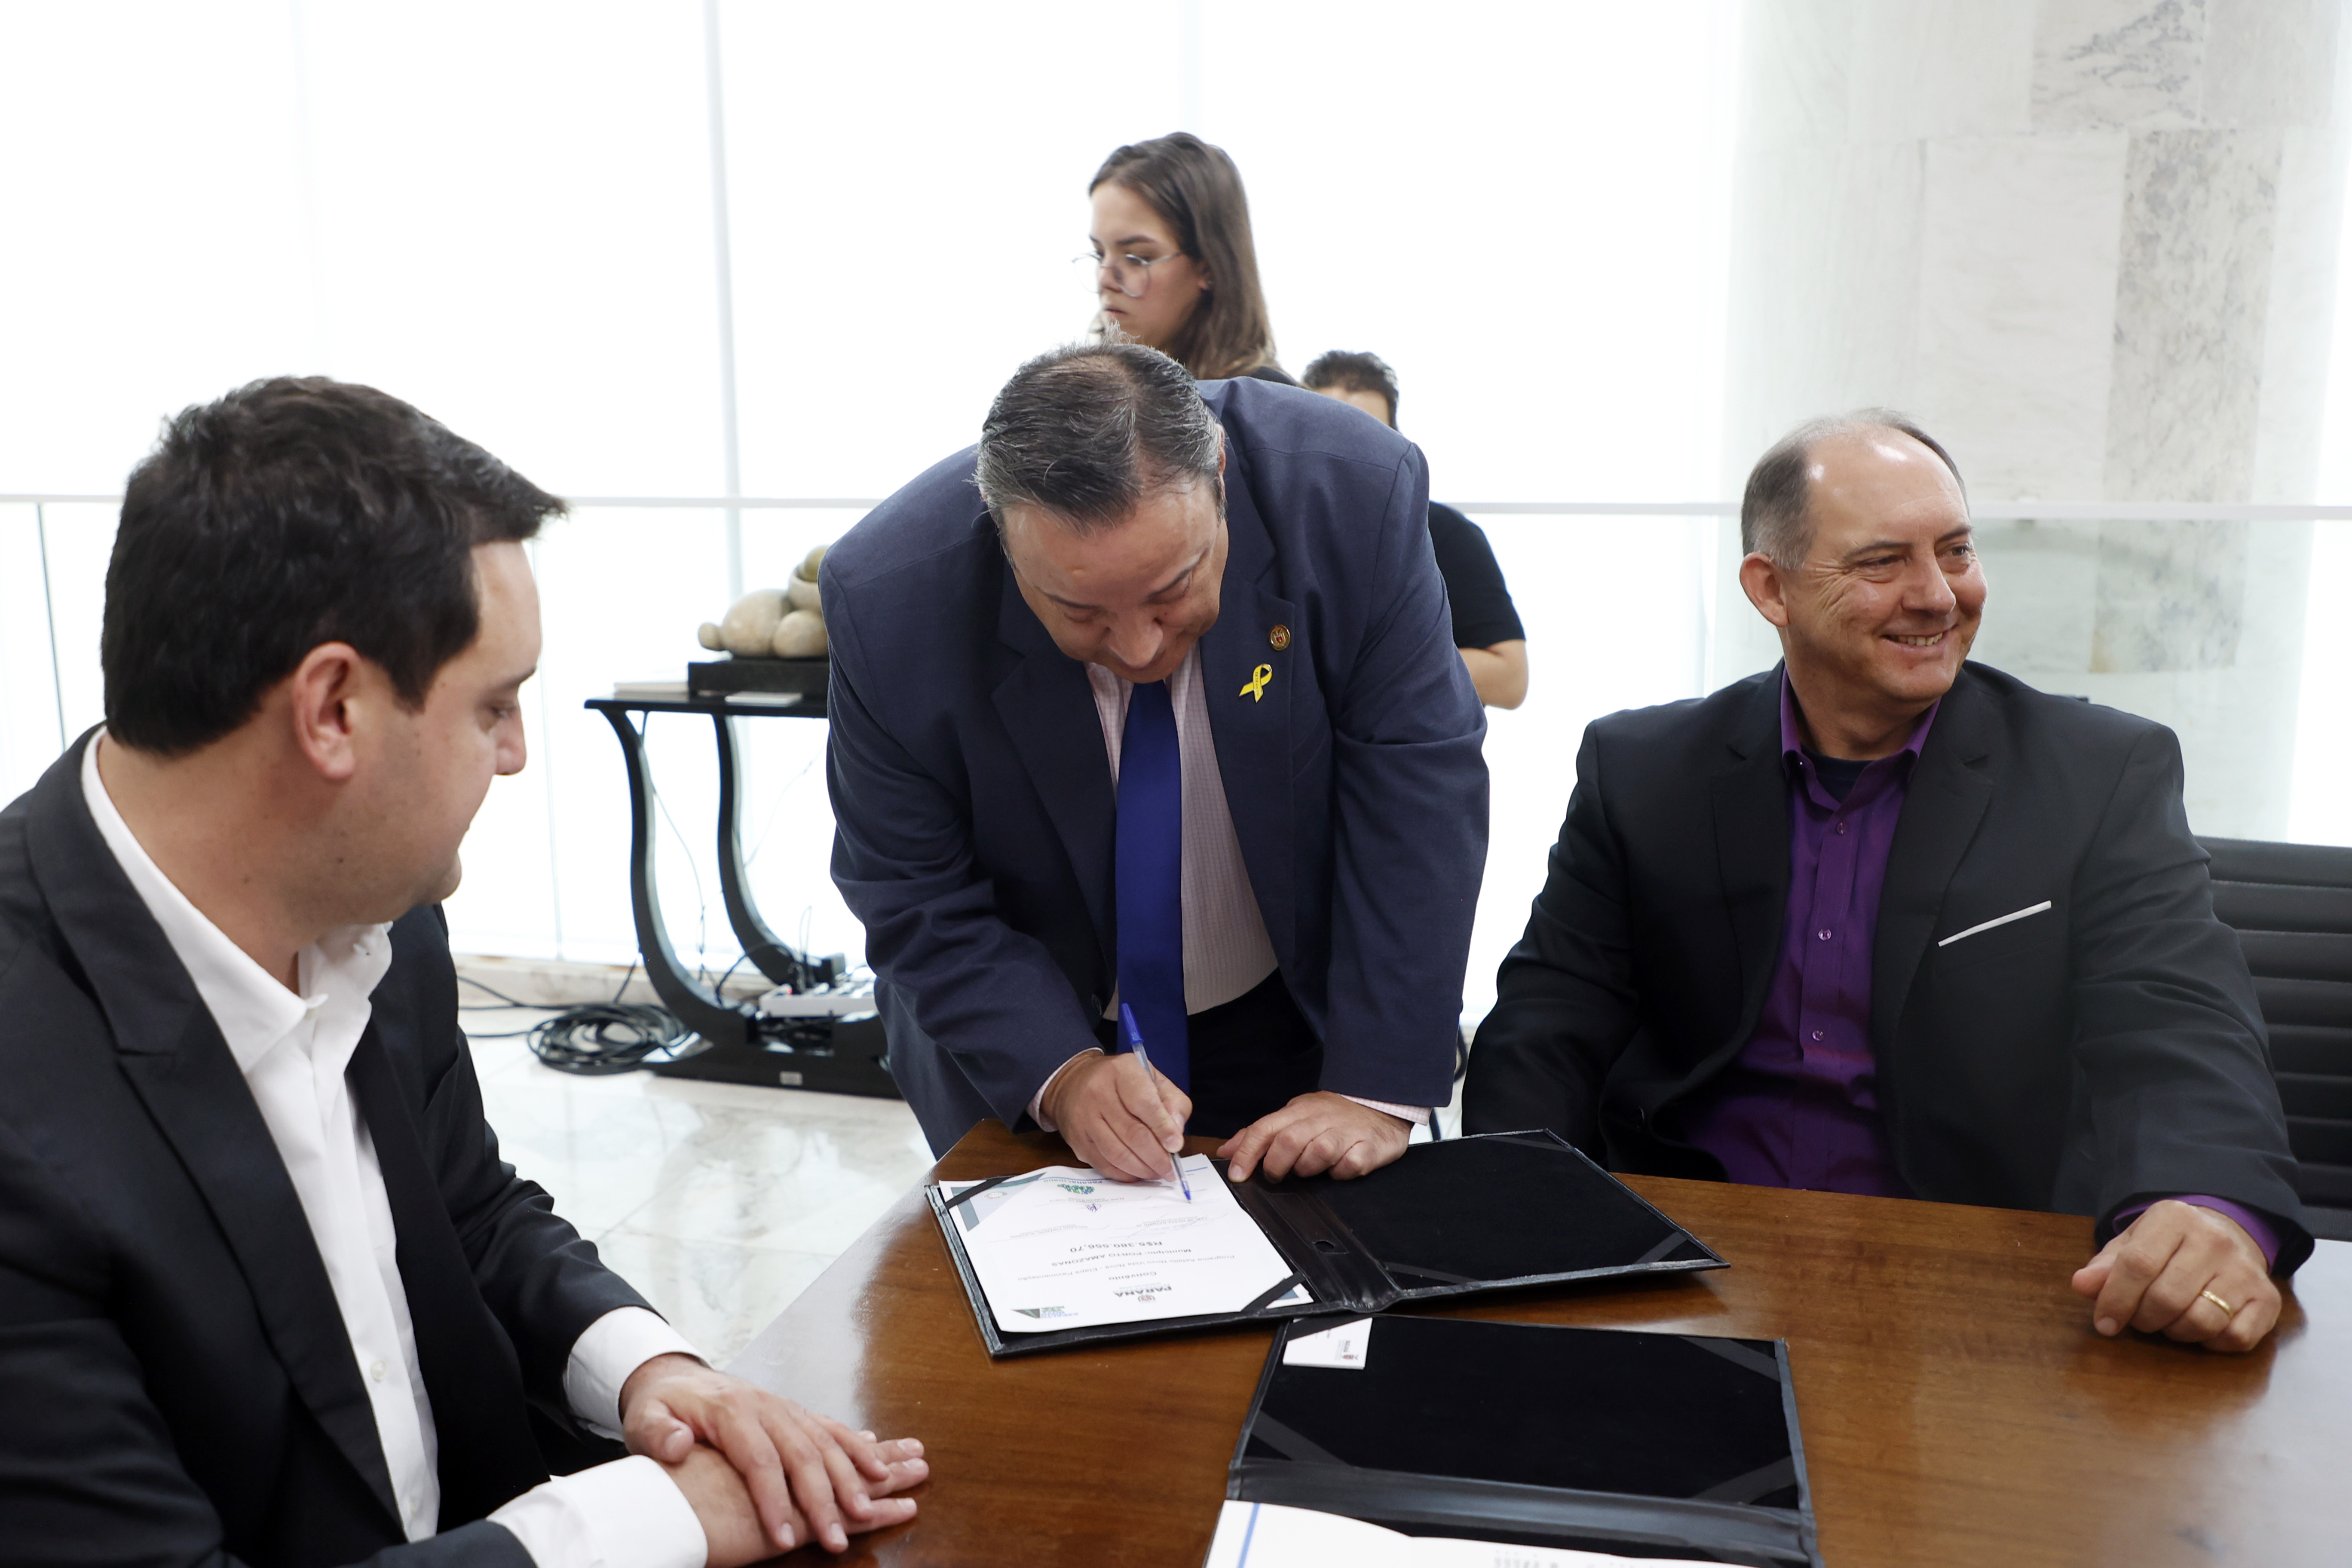 Prefeito Elias Gomes da Costa (Podemos) ressalta que é um marco para a cidade participar do lançamento do projeto ‘Asfalto Novo, Vida Nova’